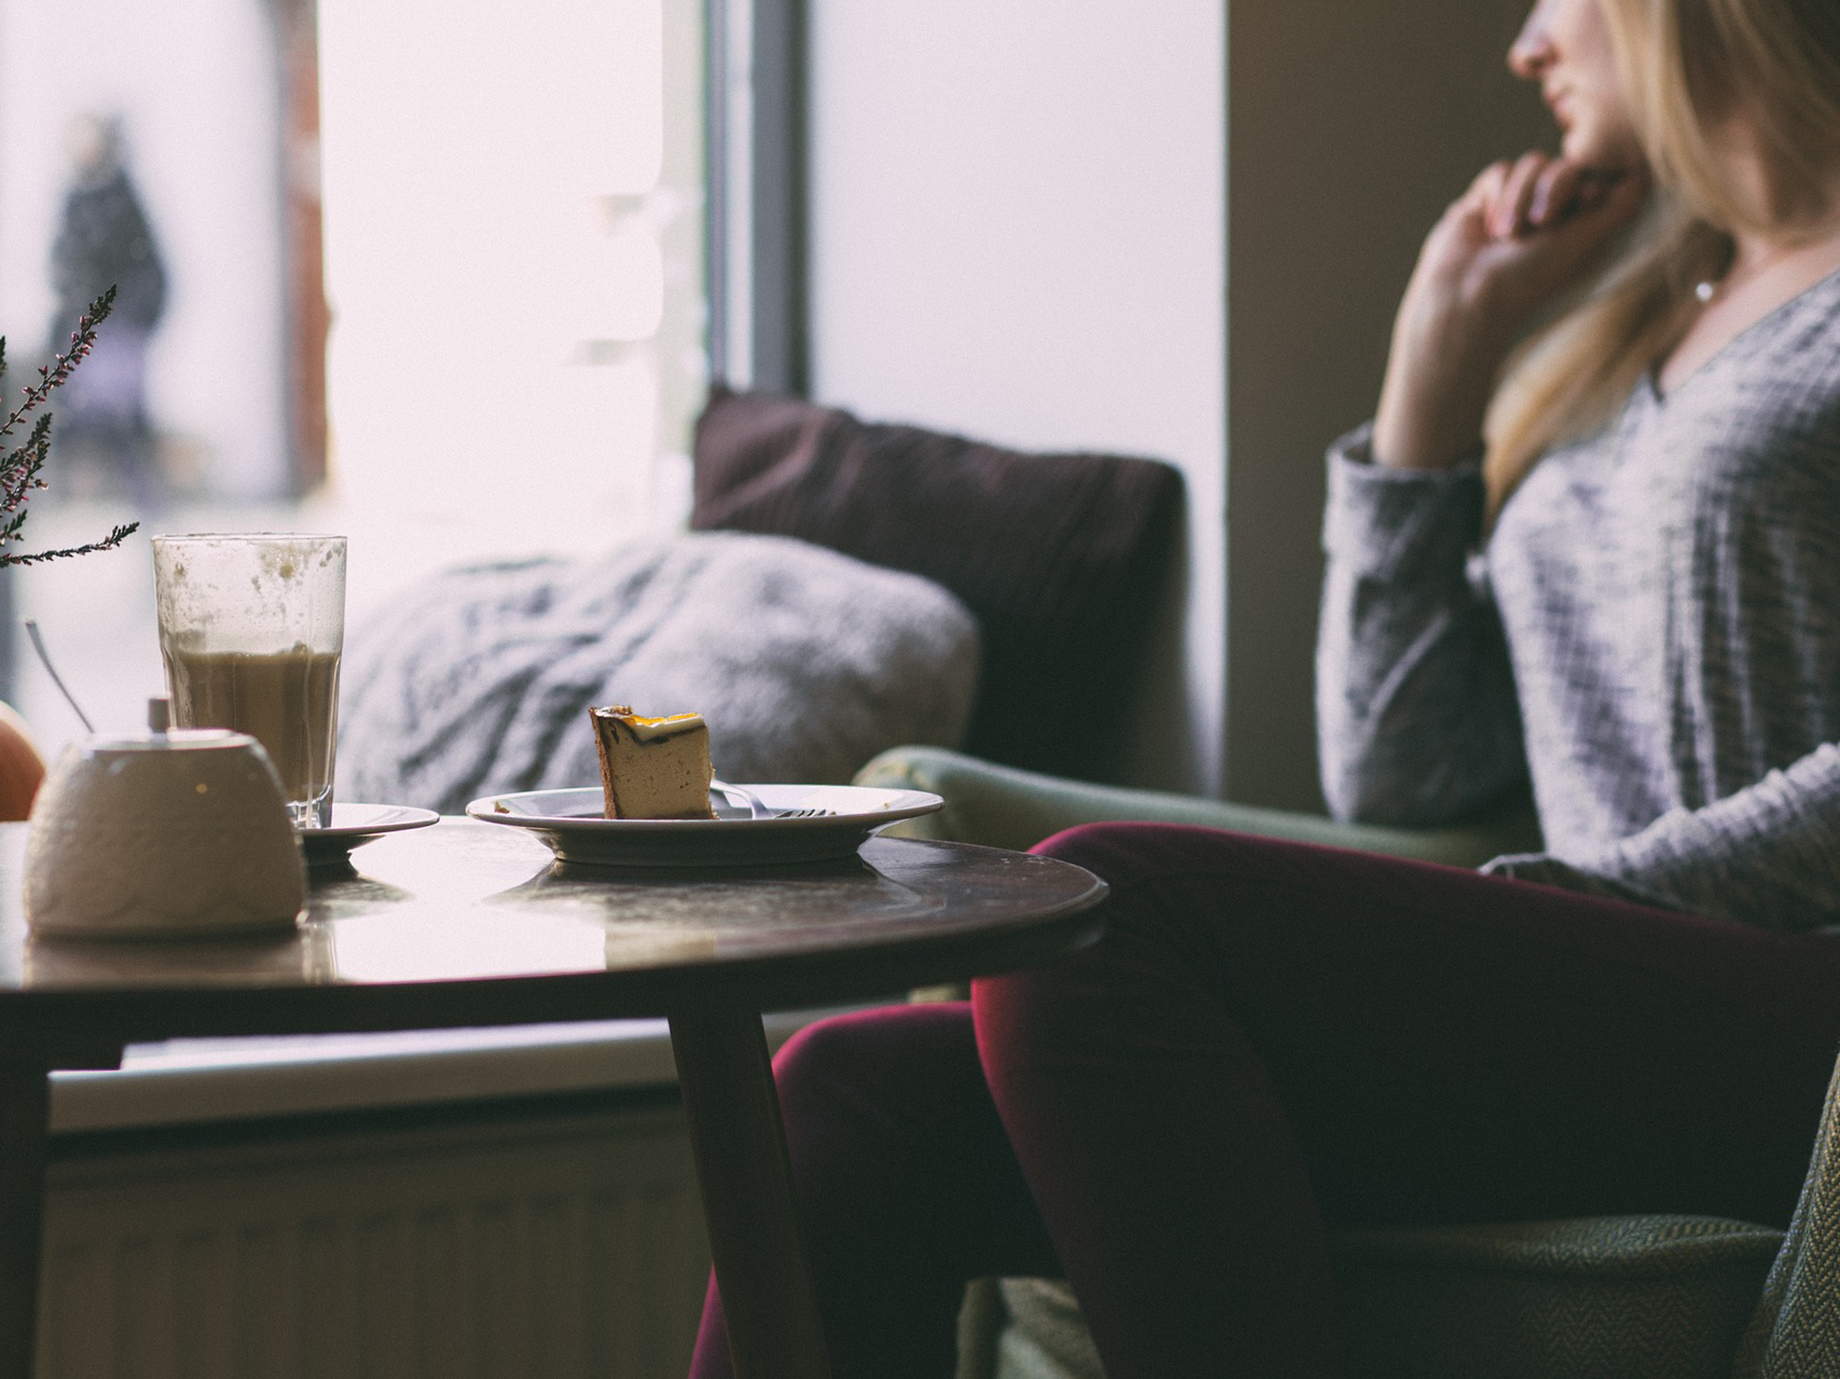 熱咖啡、軟沙發有助提高說話影響力，心理學告訴你的４個微妙技巧